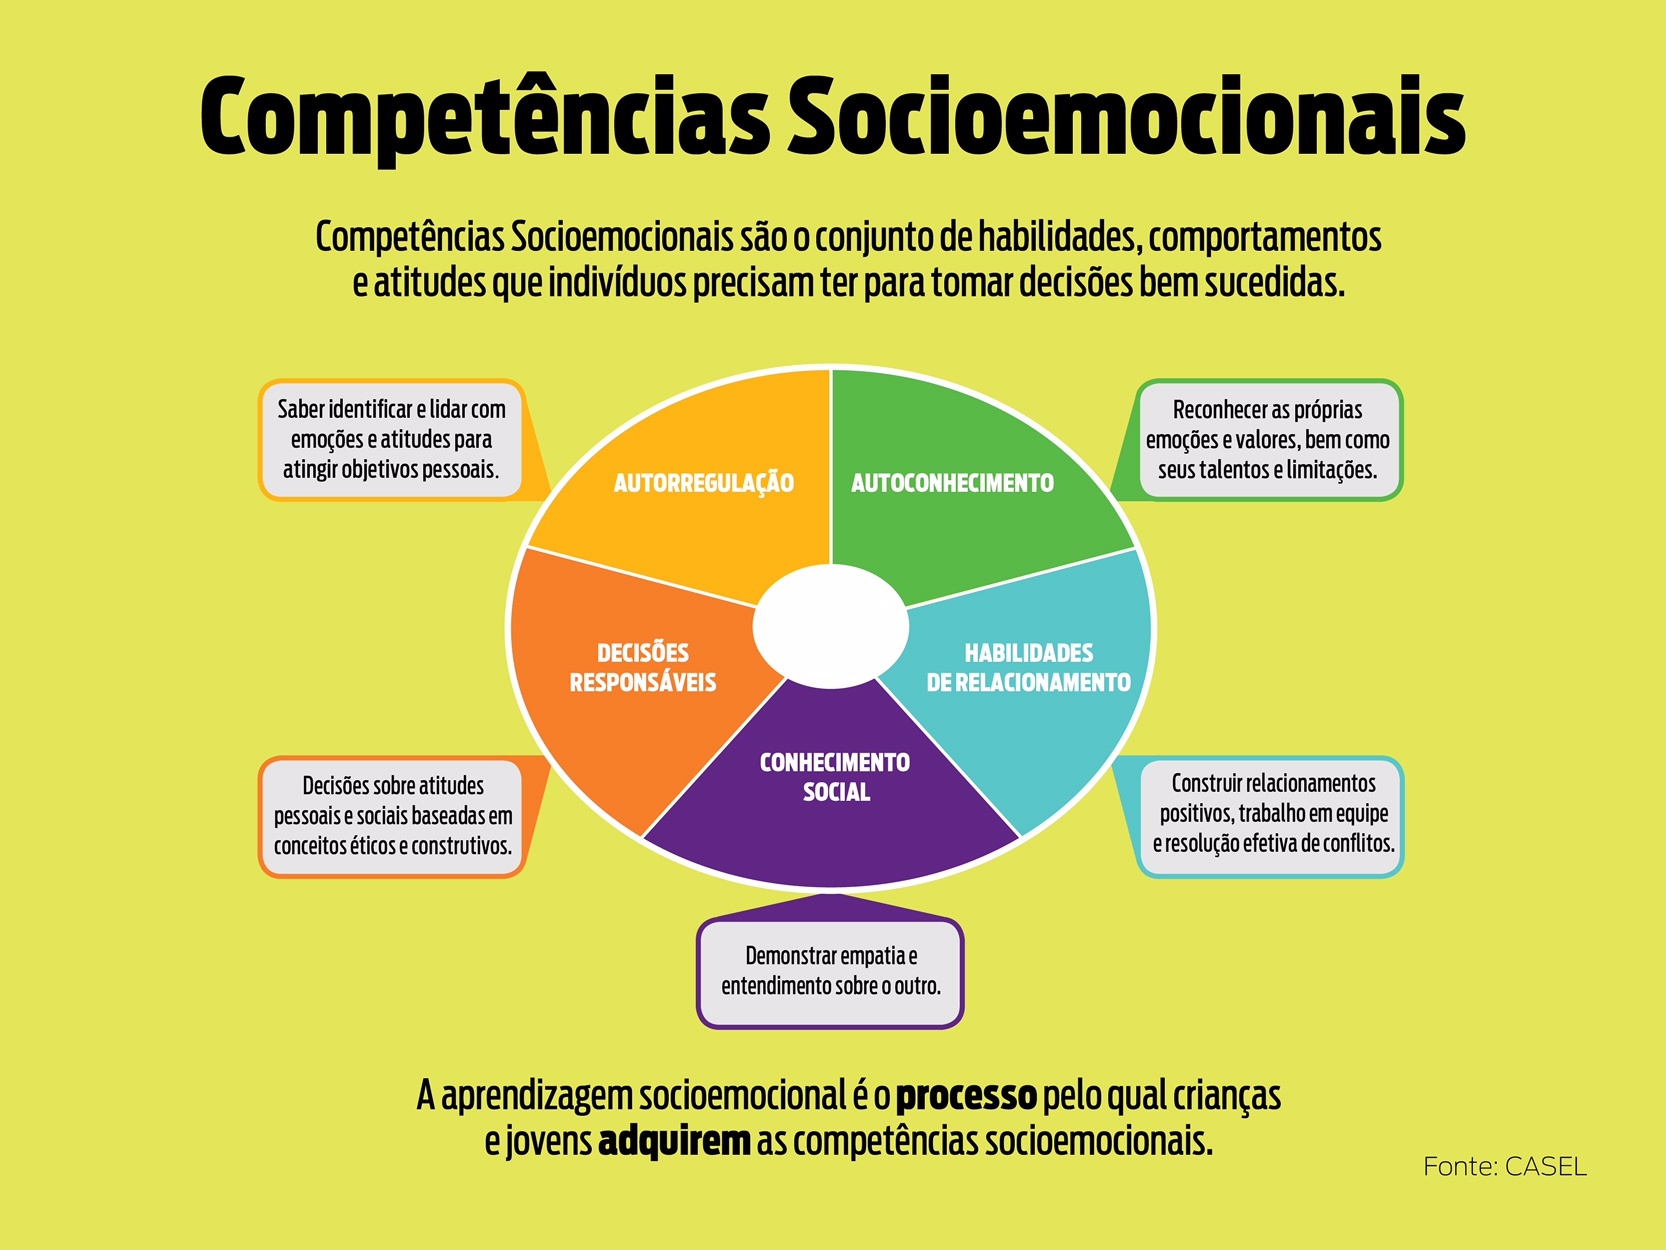 Competências socioemocionais: o Clube do Educador 5.0 explica como trabalhar em sala de aula